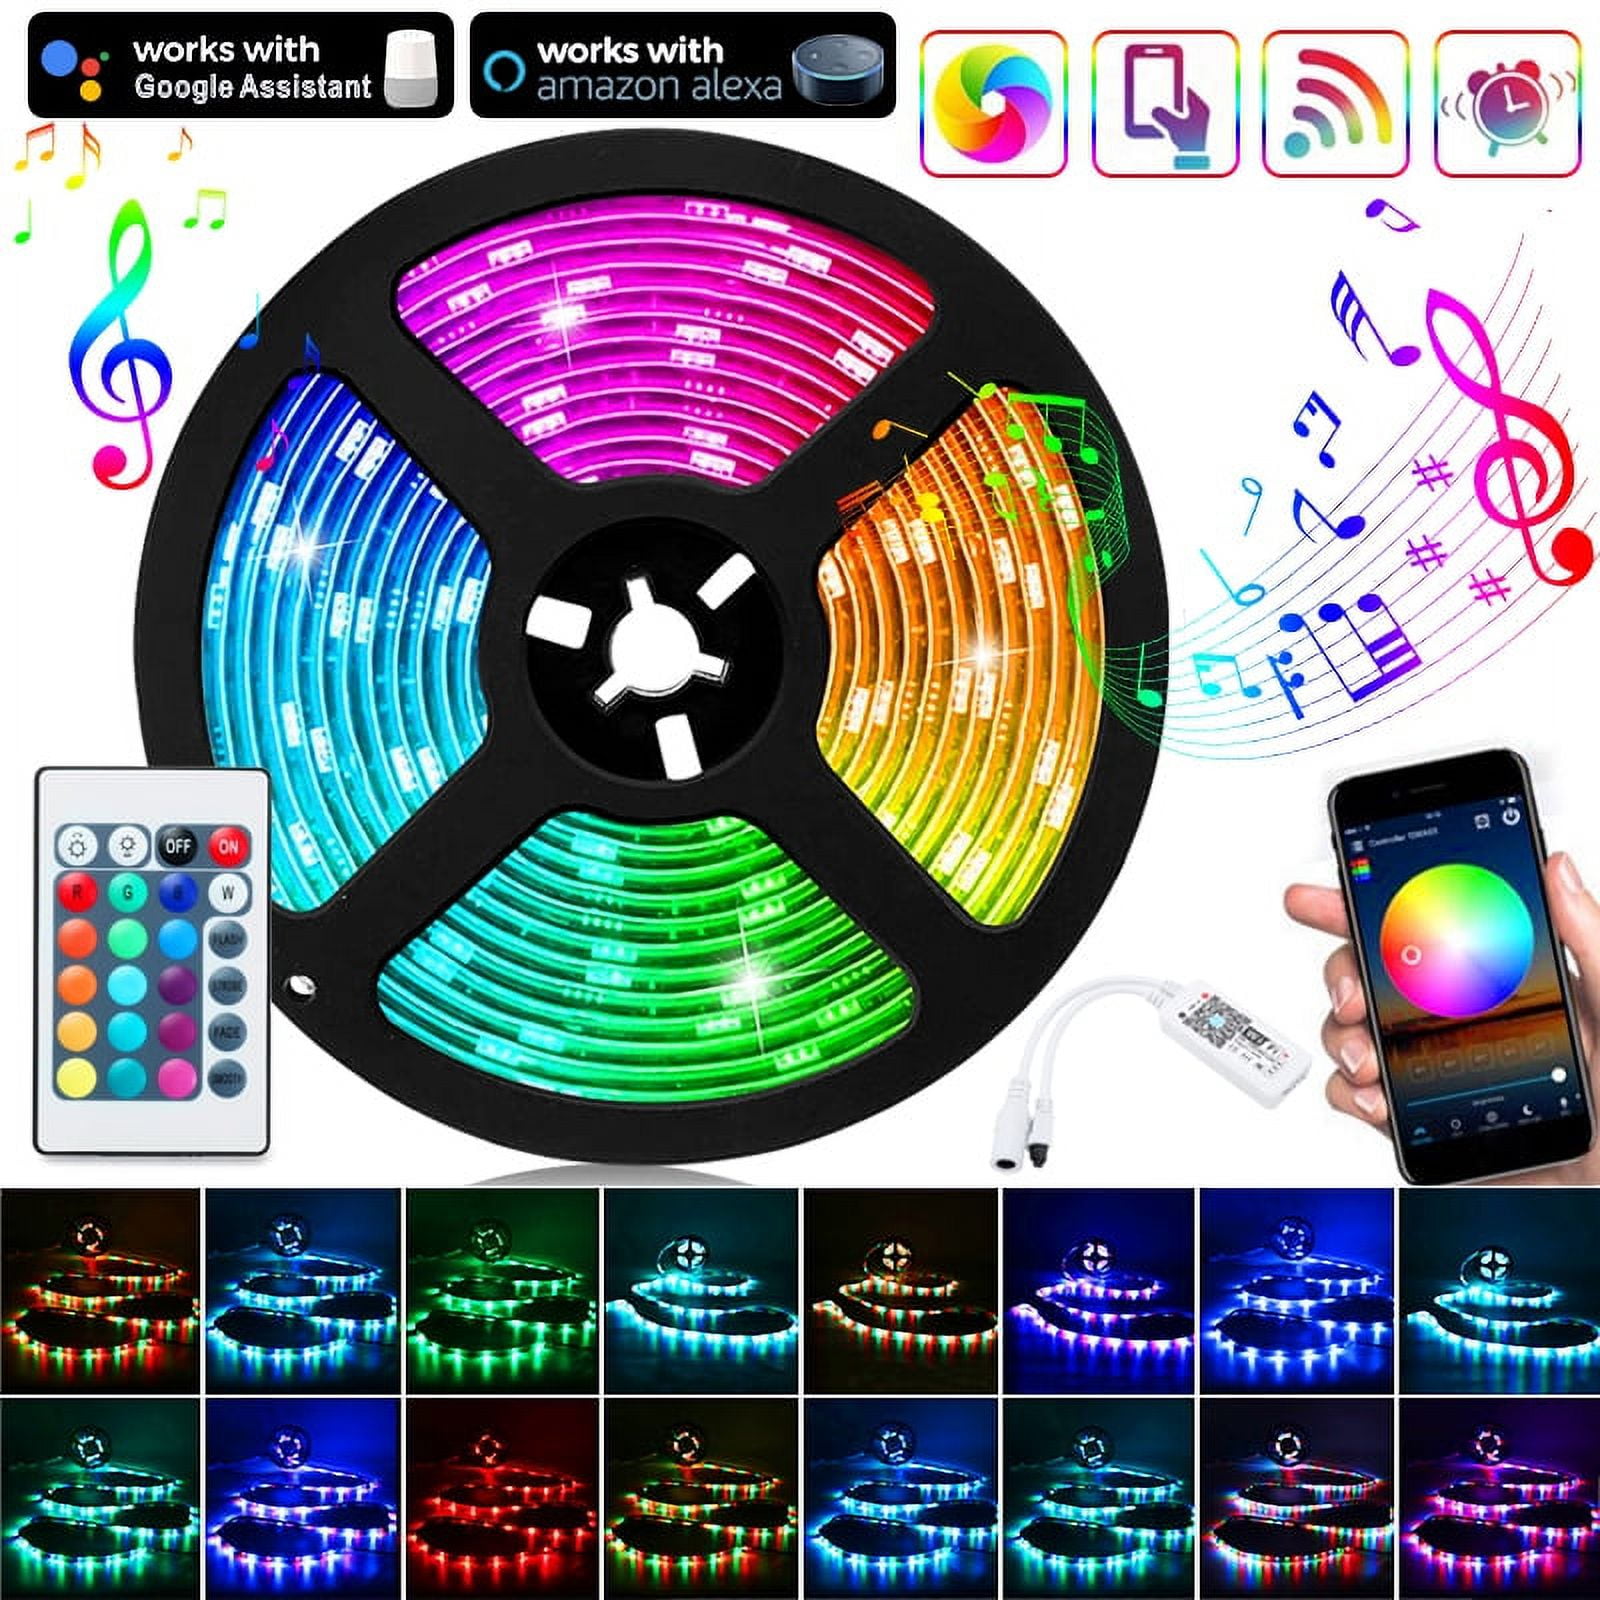 color-change LED light bulb w/ app & remote control, Five Below